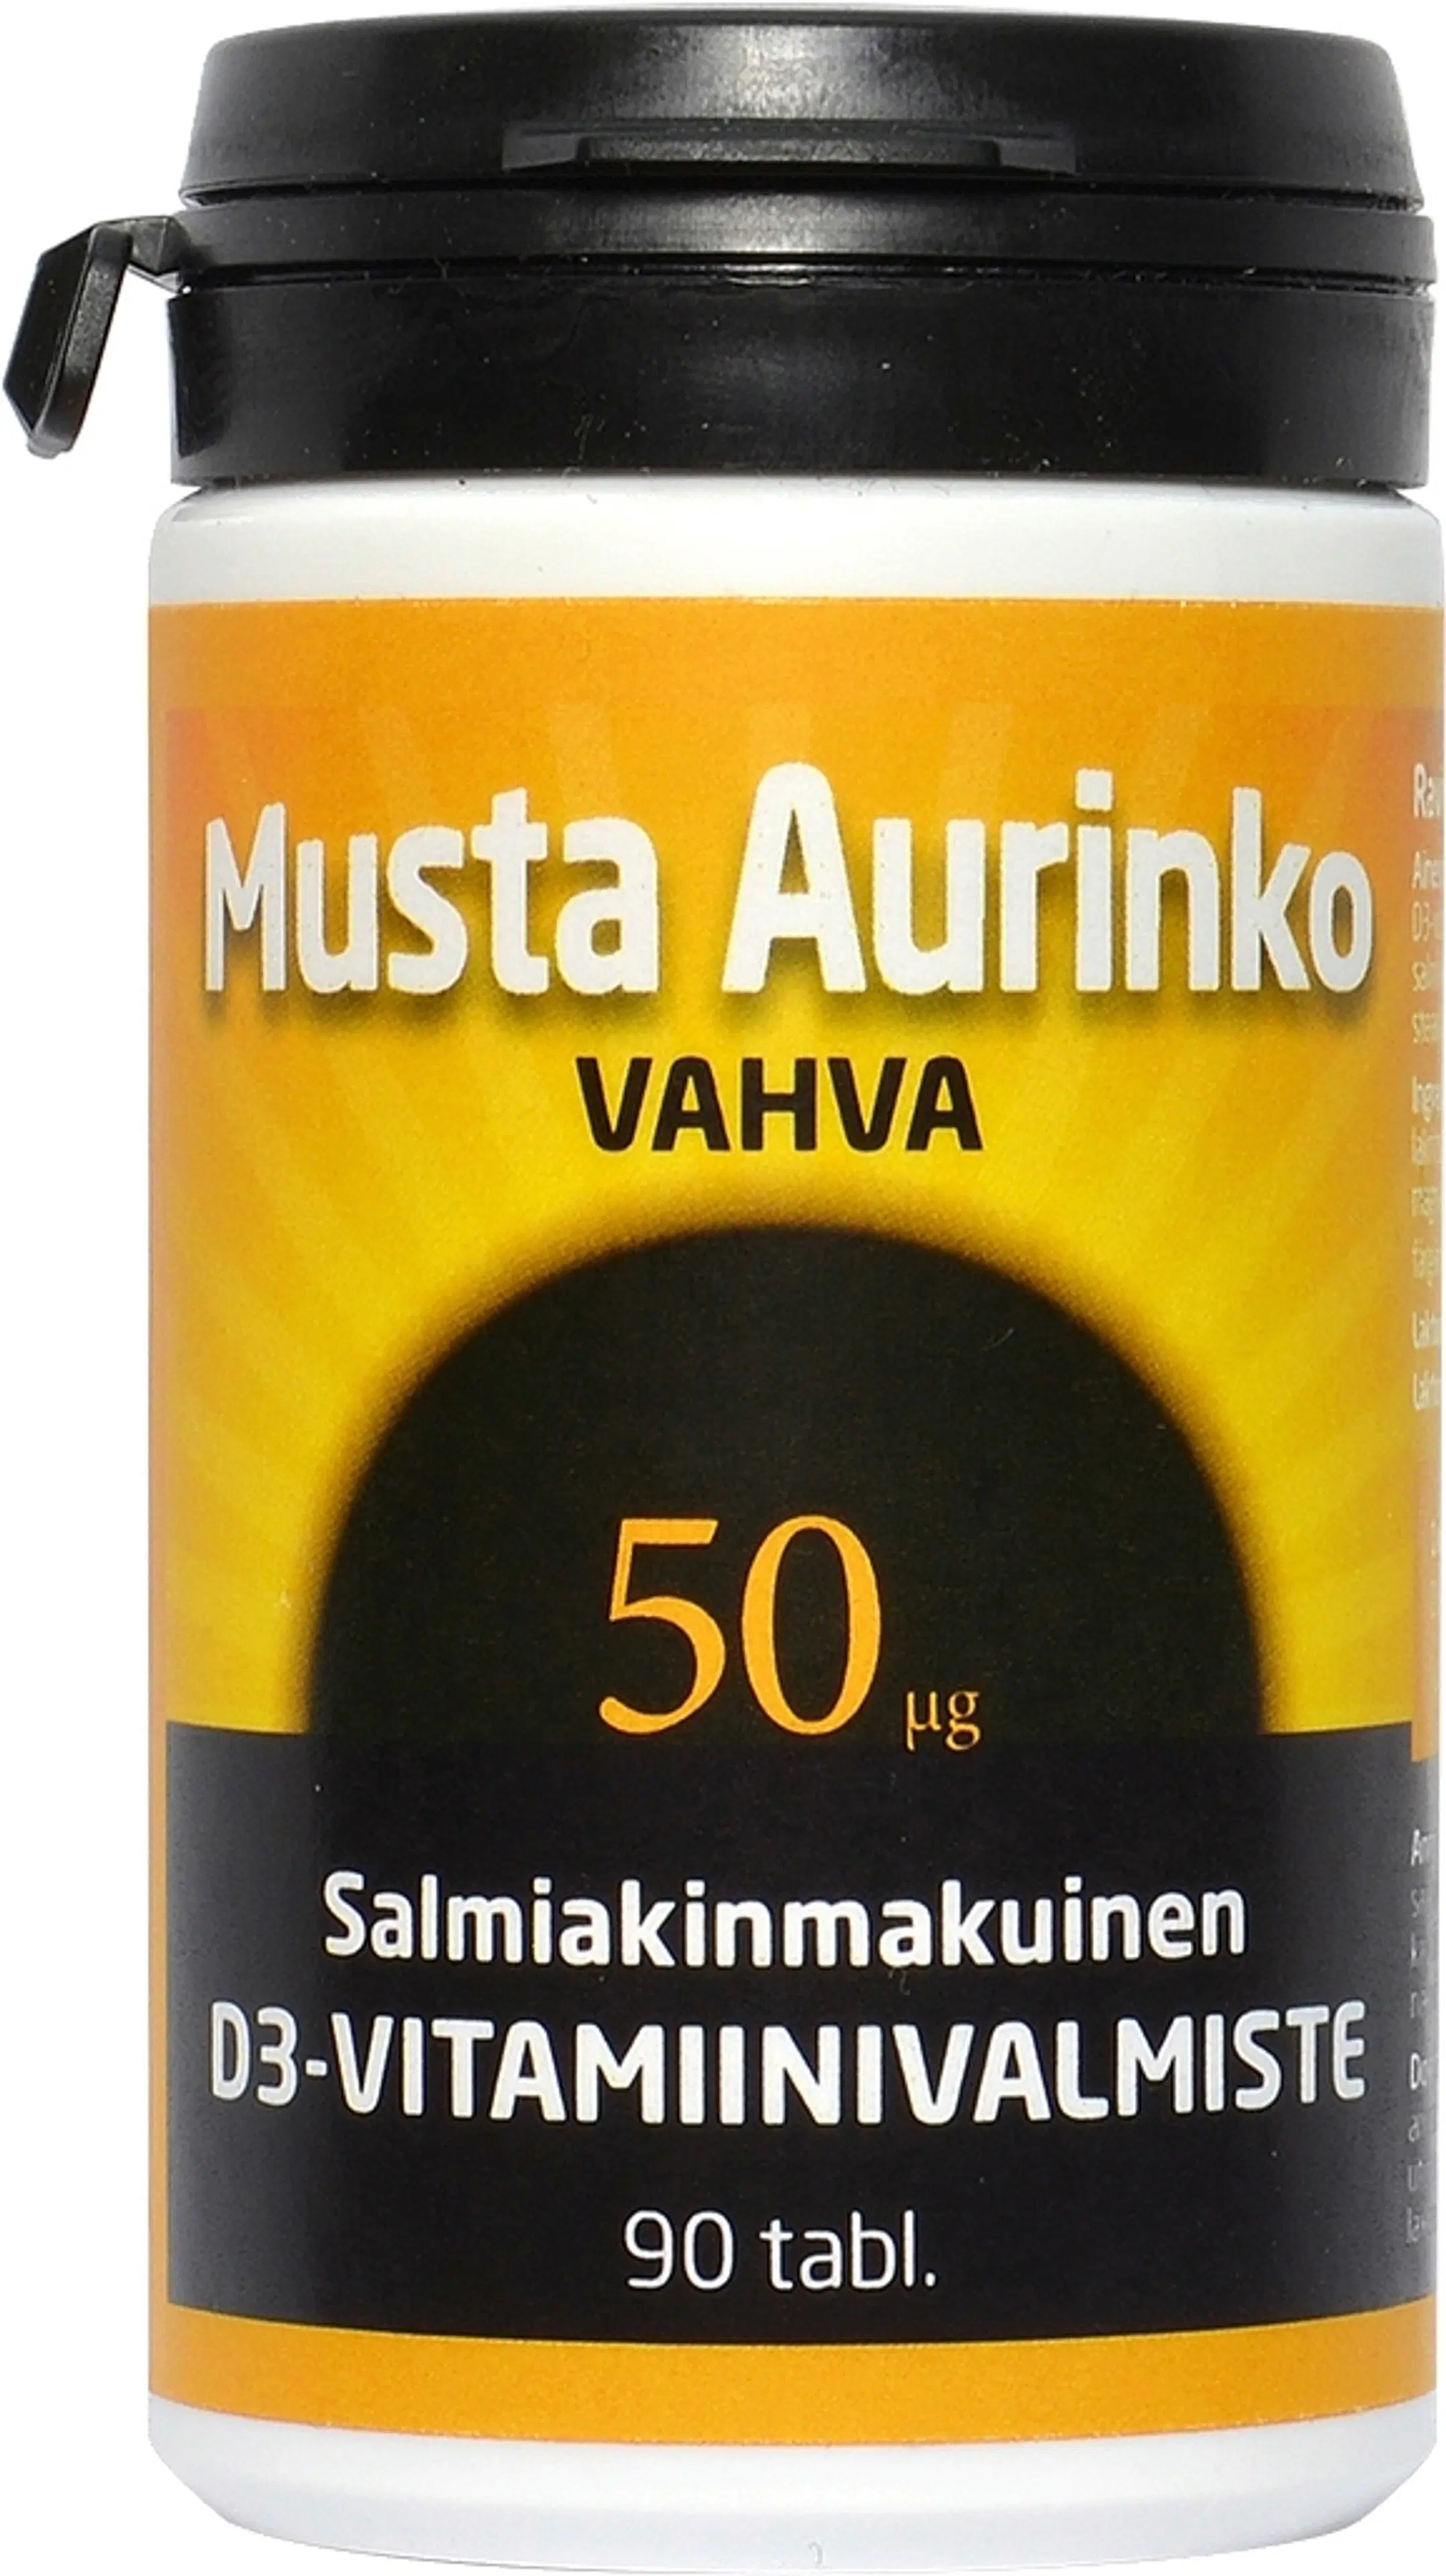 Musta Aurinko Vahva salmiakinmakuinen D-vitamiinivalmiste 90 tabl.